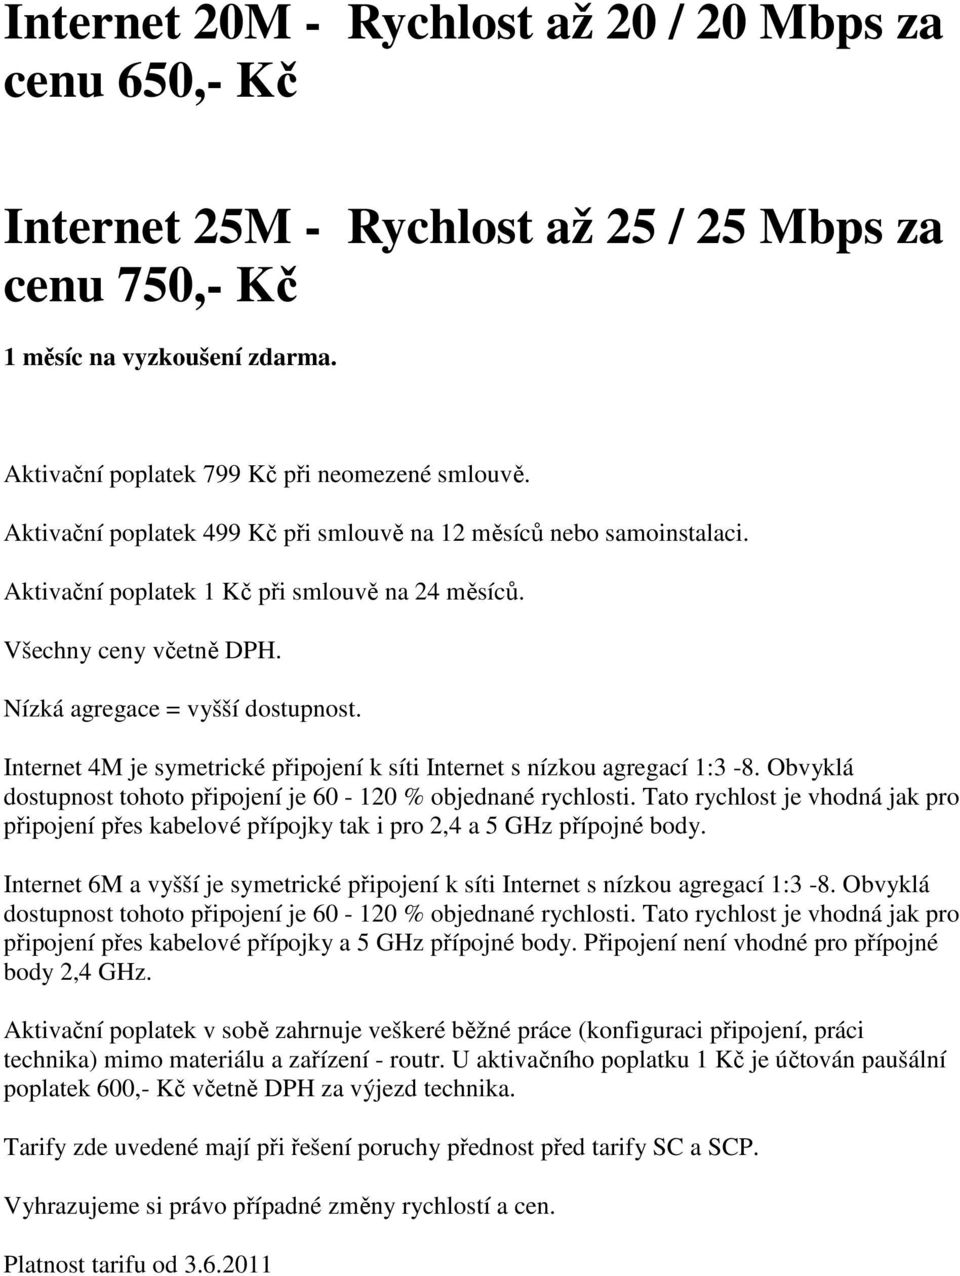 Internet 4M je symetrické připojení k síti Internet s nízkou agregací 1:3-8. Obvyklá dostupnost tohoto připojení je 60-120 % objednané rychlosti.